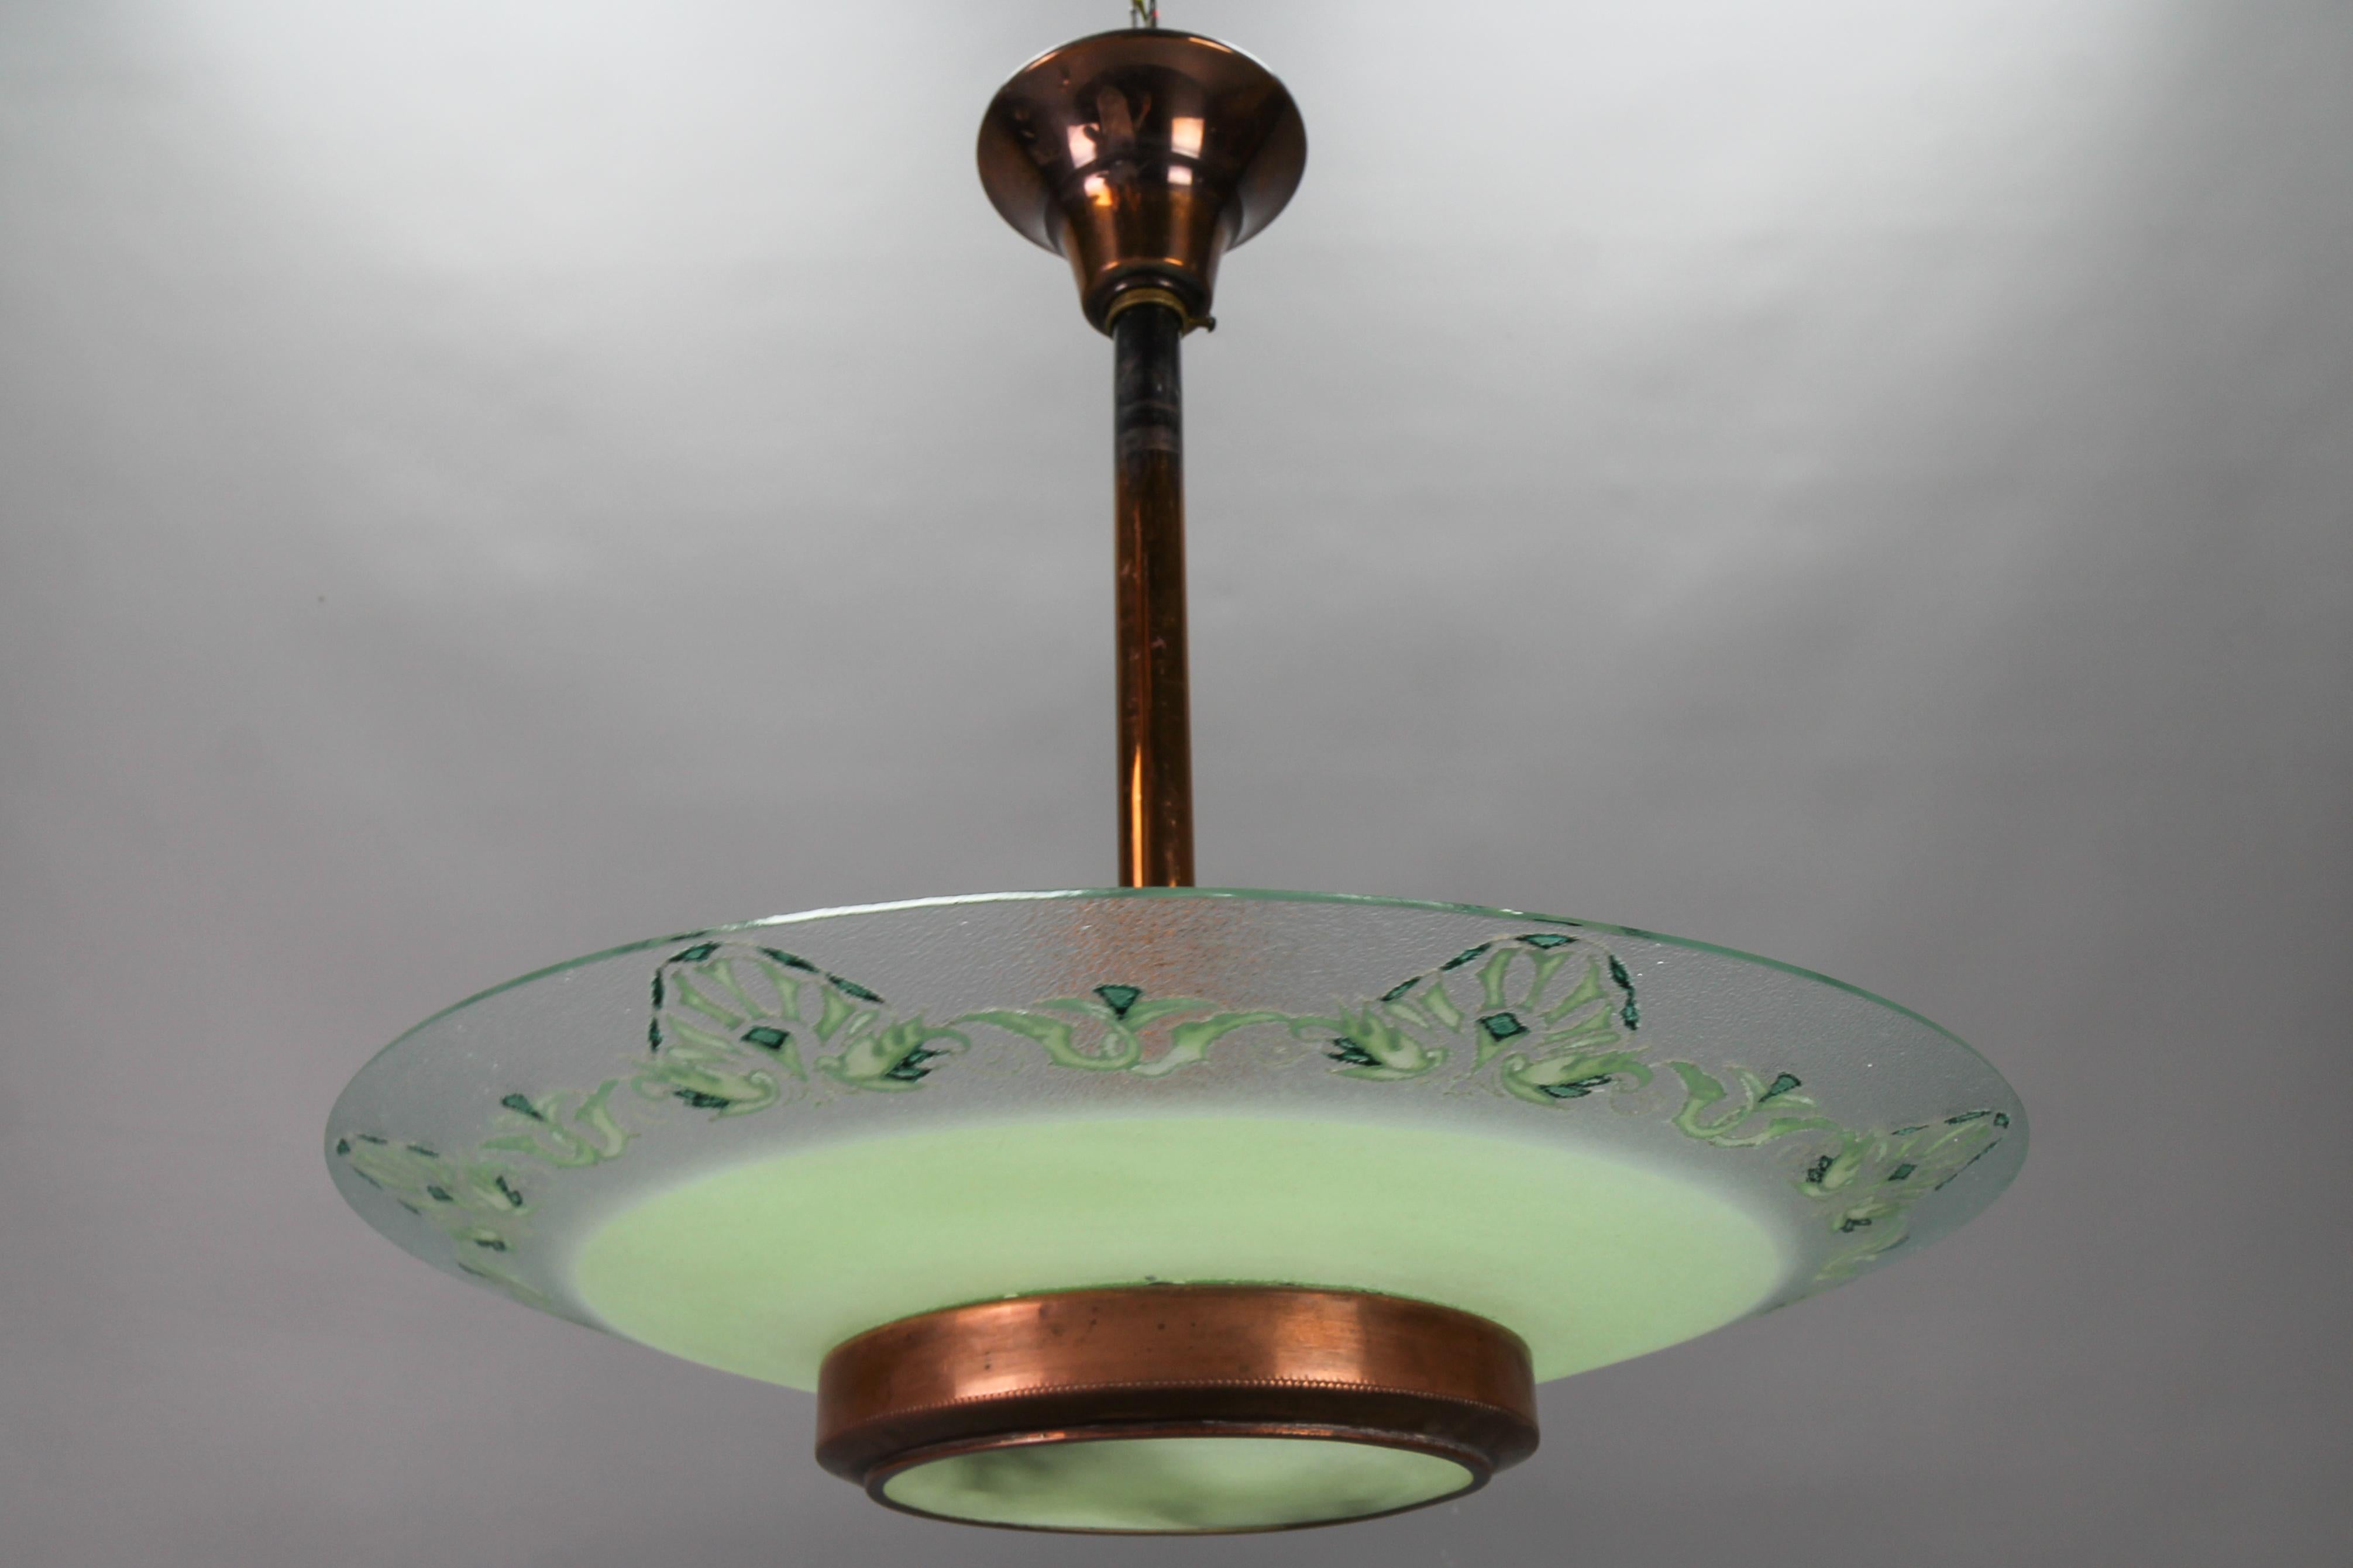 Lustre suspendu en verre vert et cuivre de Loys Lucha, datant des années 1930.
Cette magnifique lampe suspendue présente un abat-jour en verre vert et transparent légèrement texturé avec des motifs floraux stylisés sur la partie en verre